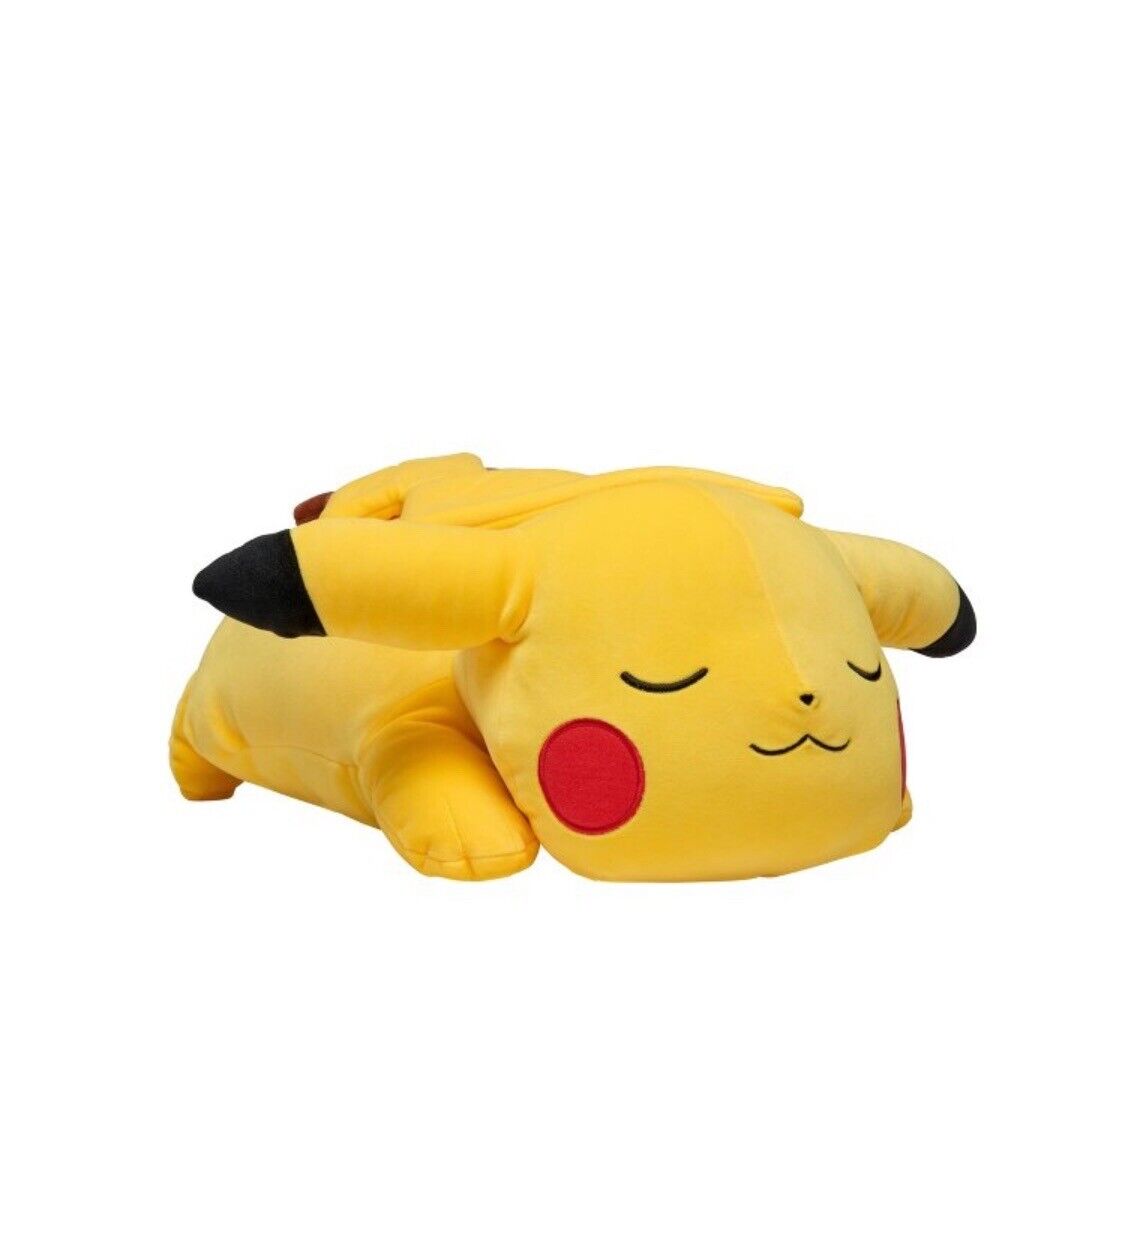 Pokemon 18” Sleeping Pikachu Soft Jumbo Large Plush Pillow Buddy